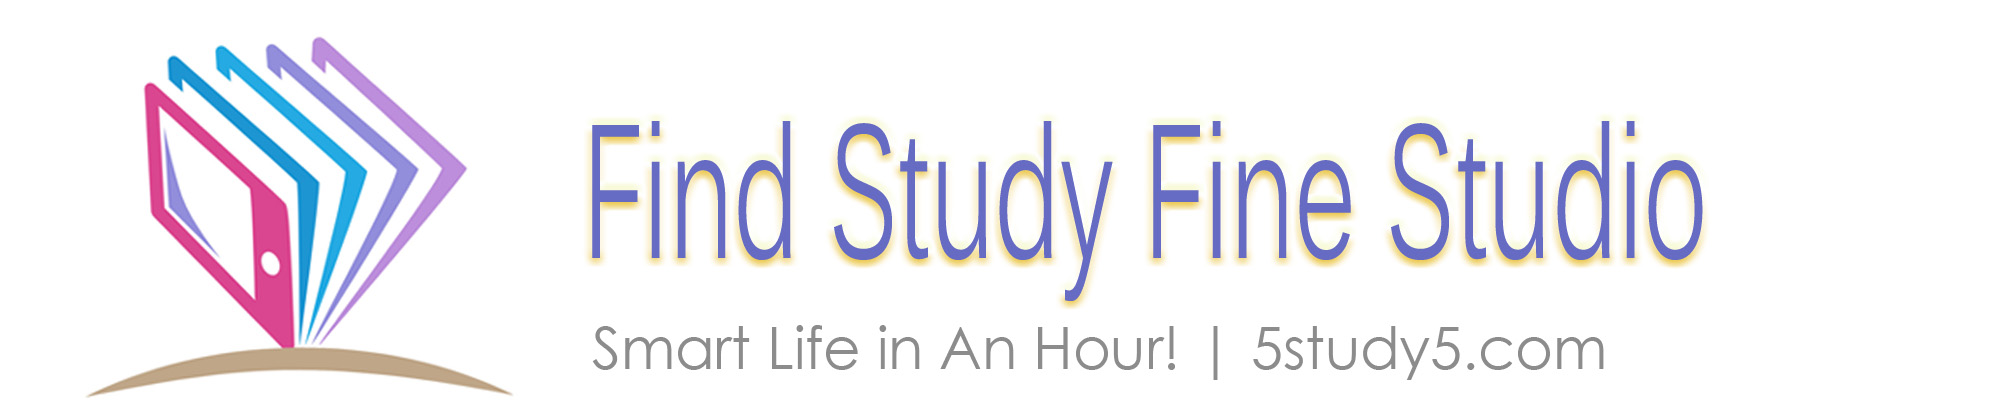 Find Study Fine Studio